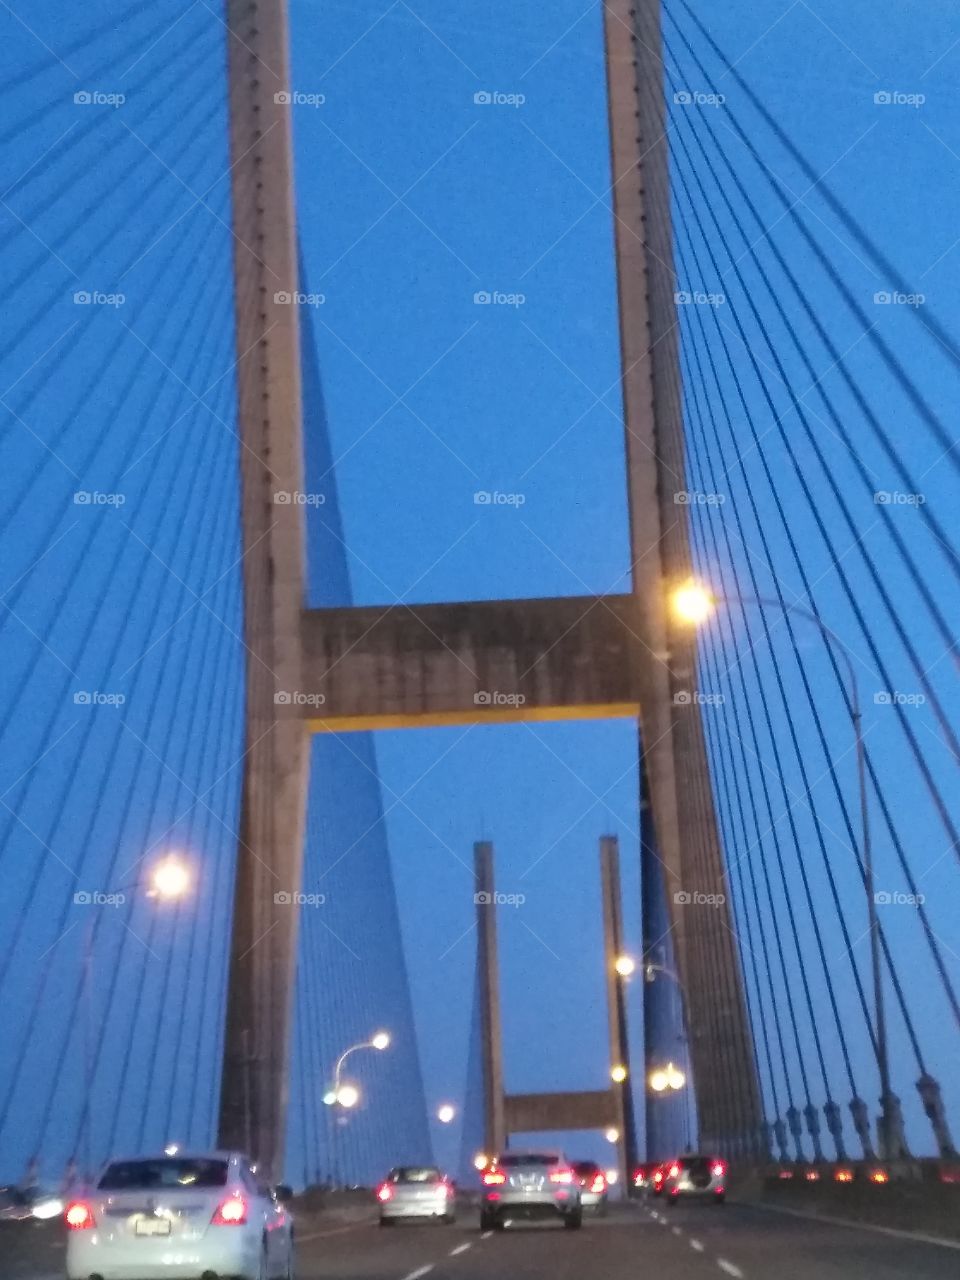 nice bridge